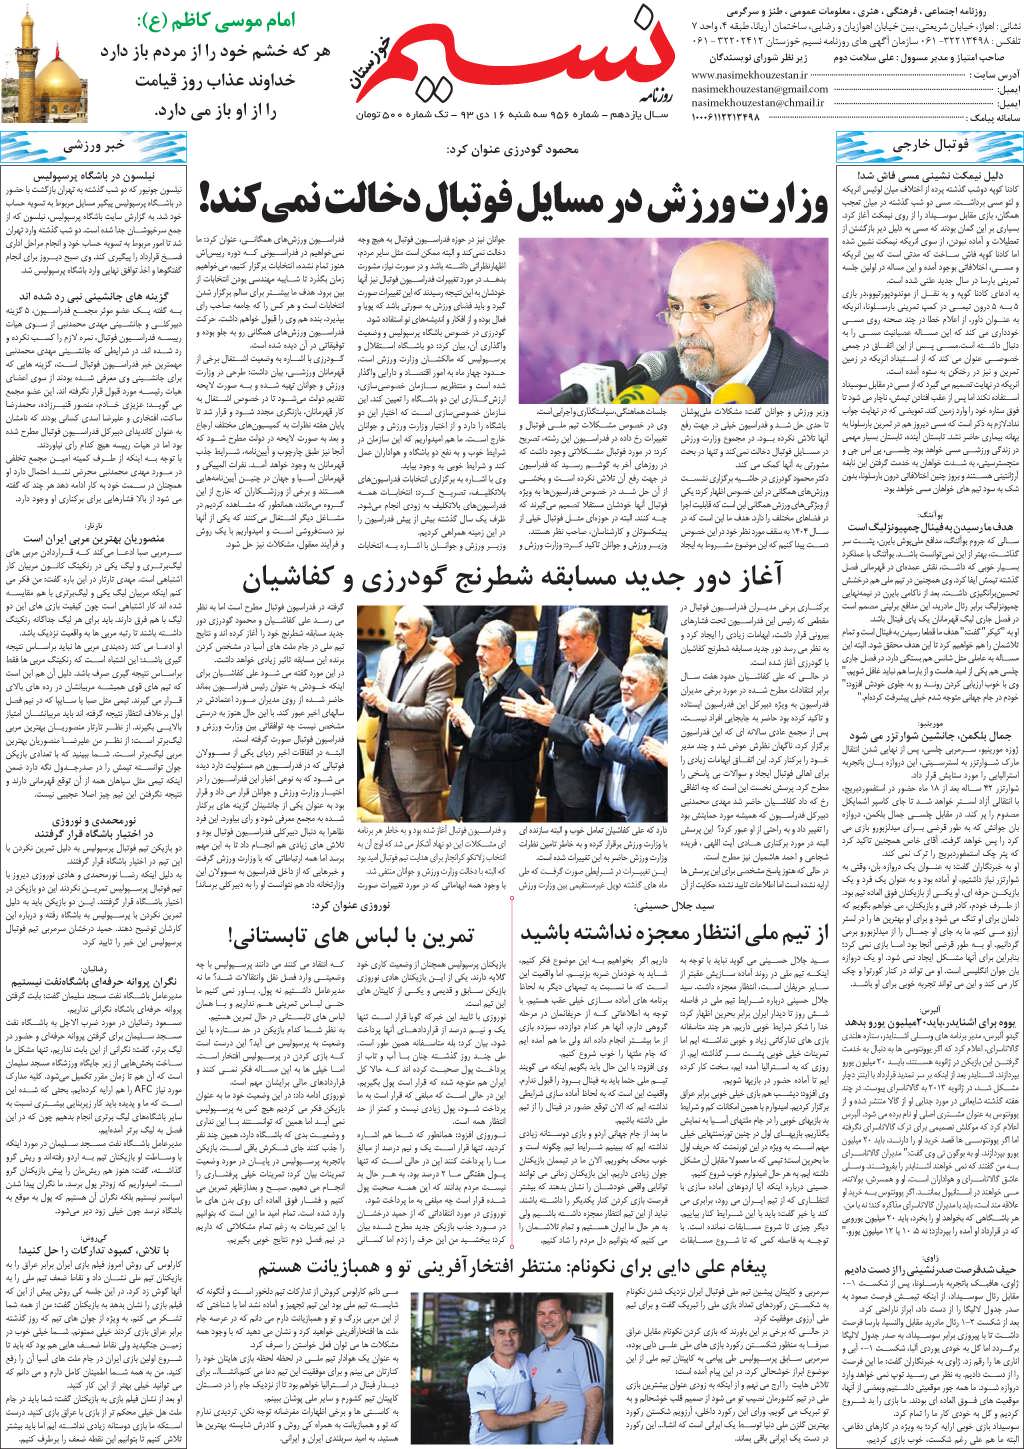 صفحه آخر روزنامه نسیم شماره 956